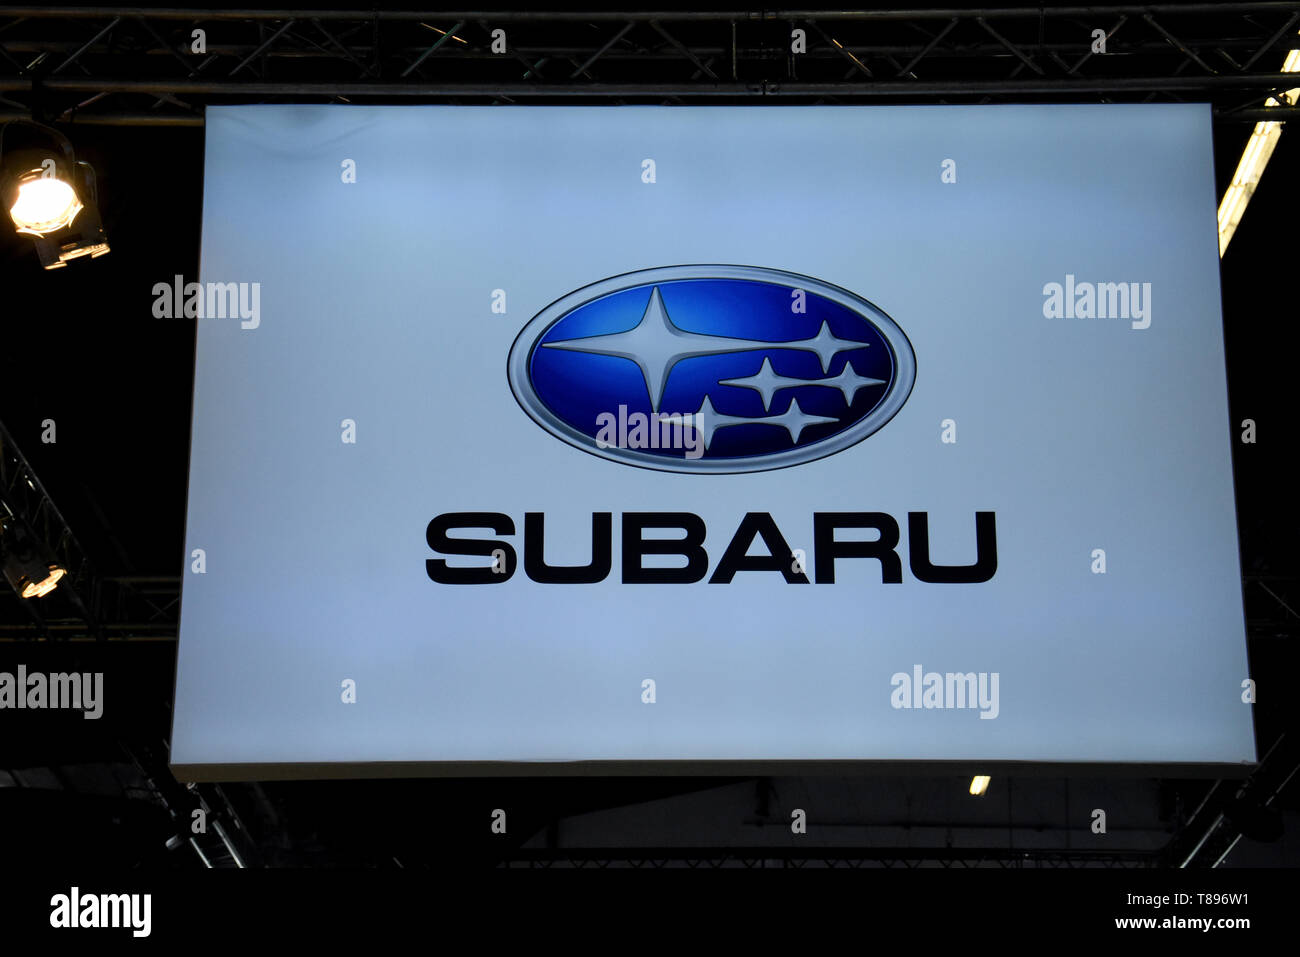 L'image d'entreprise de la marque automobile Subaru qui expose ses véhicules vu à la Foire de l'Automobile 2019 à Barcelone. Banque D'Images